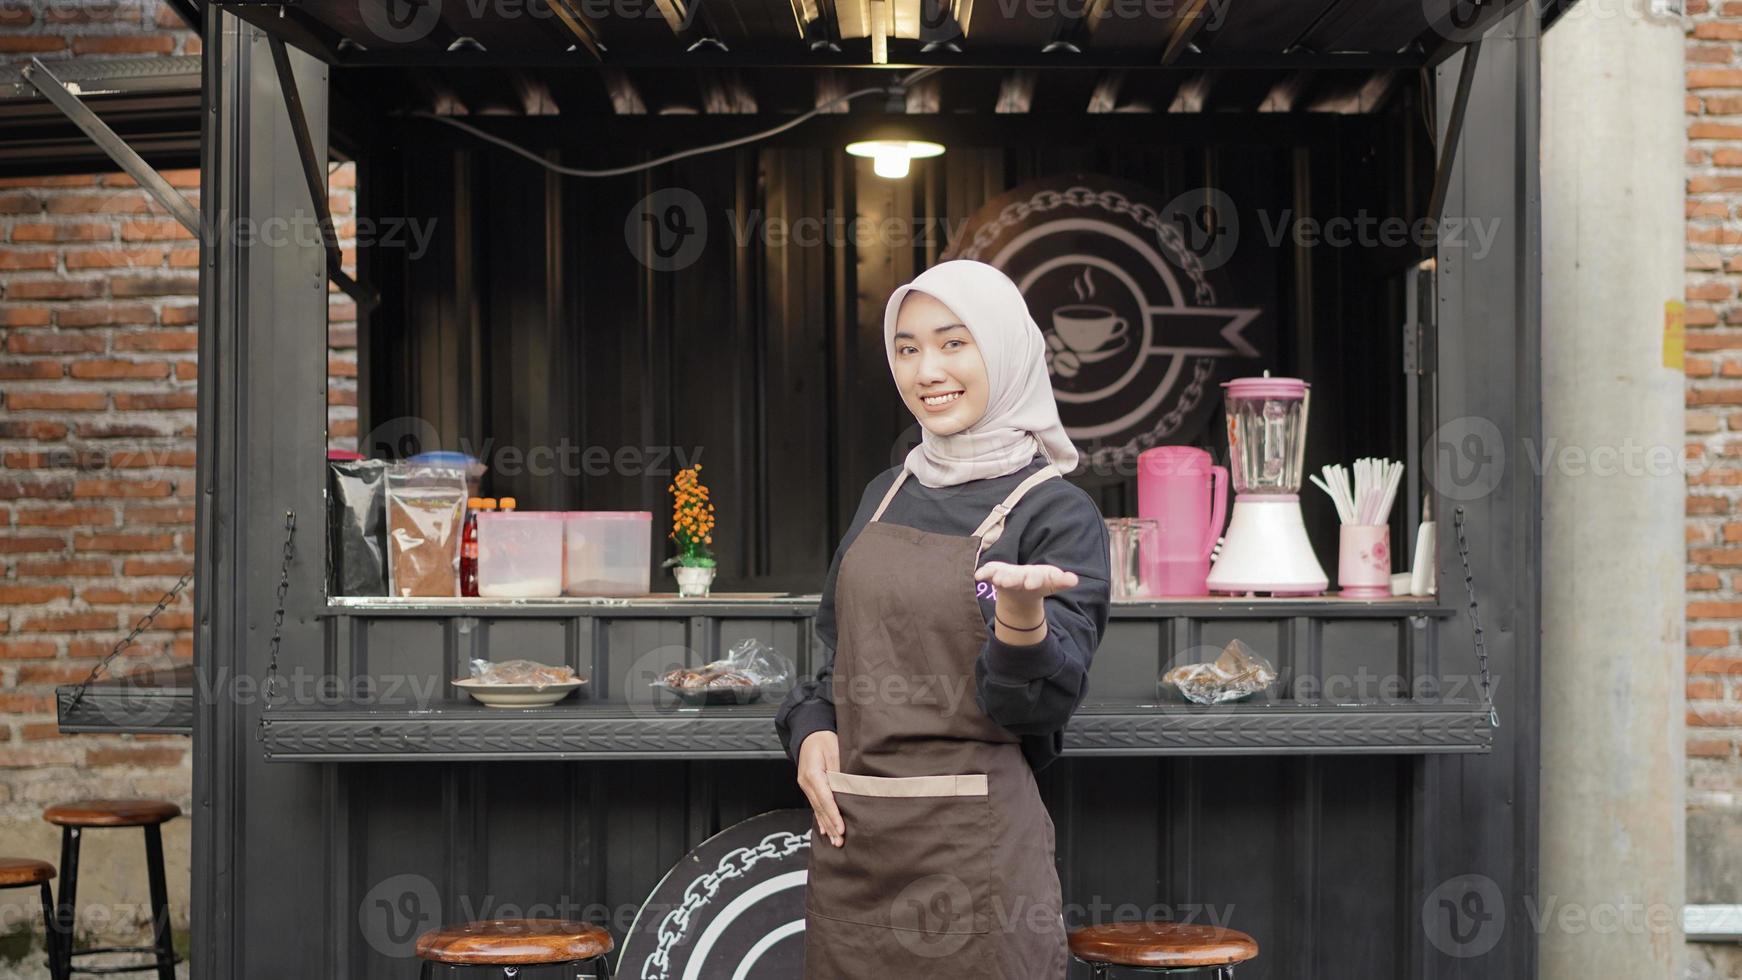 schöne kellnerin gestikuliert glücklich am caféstandcontainer foto